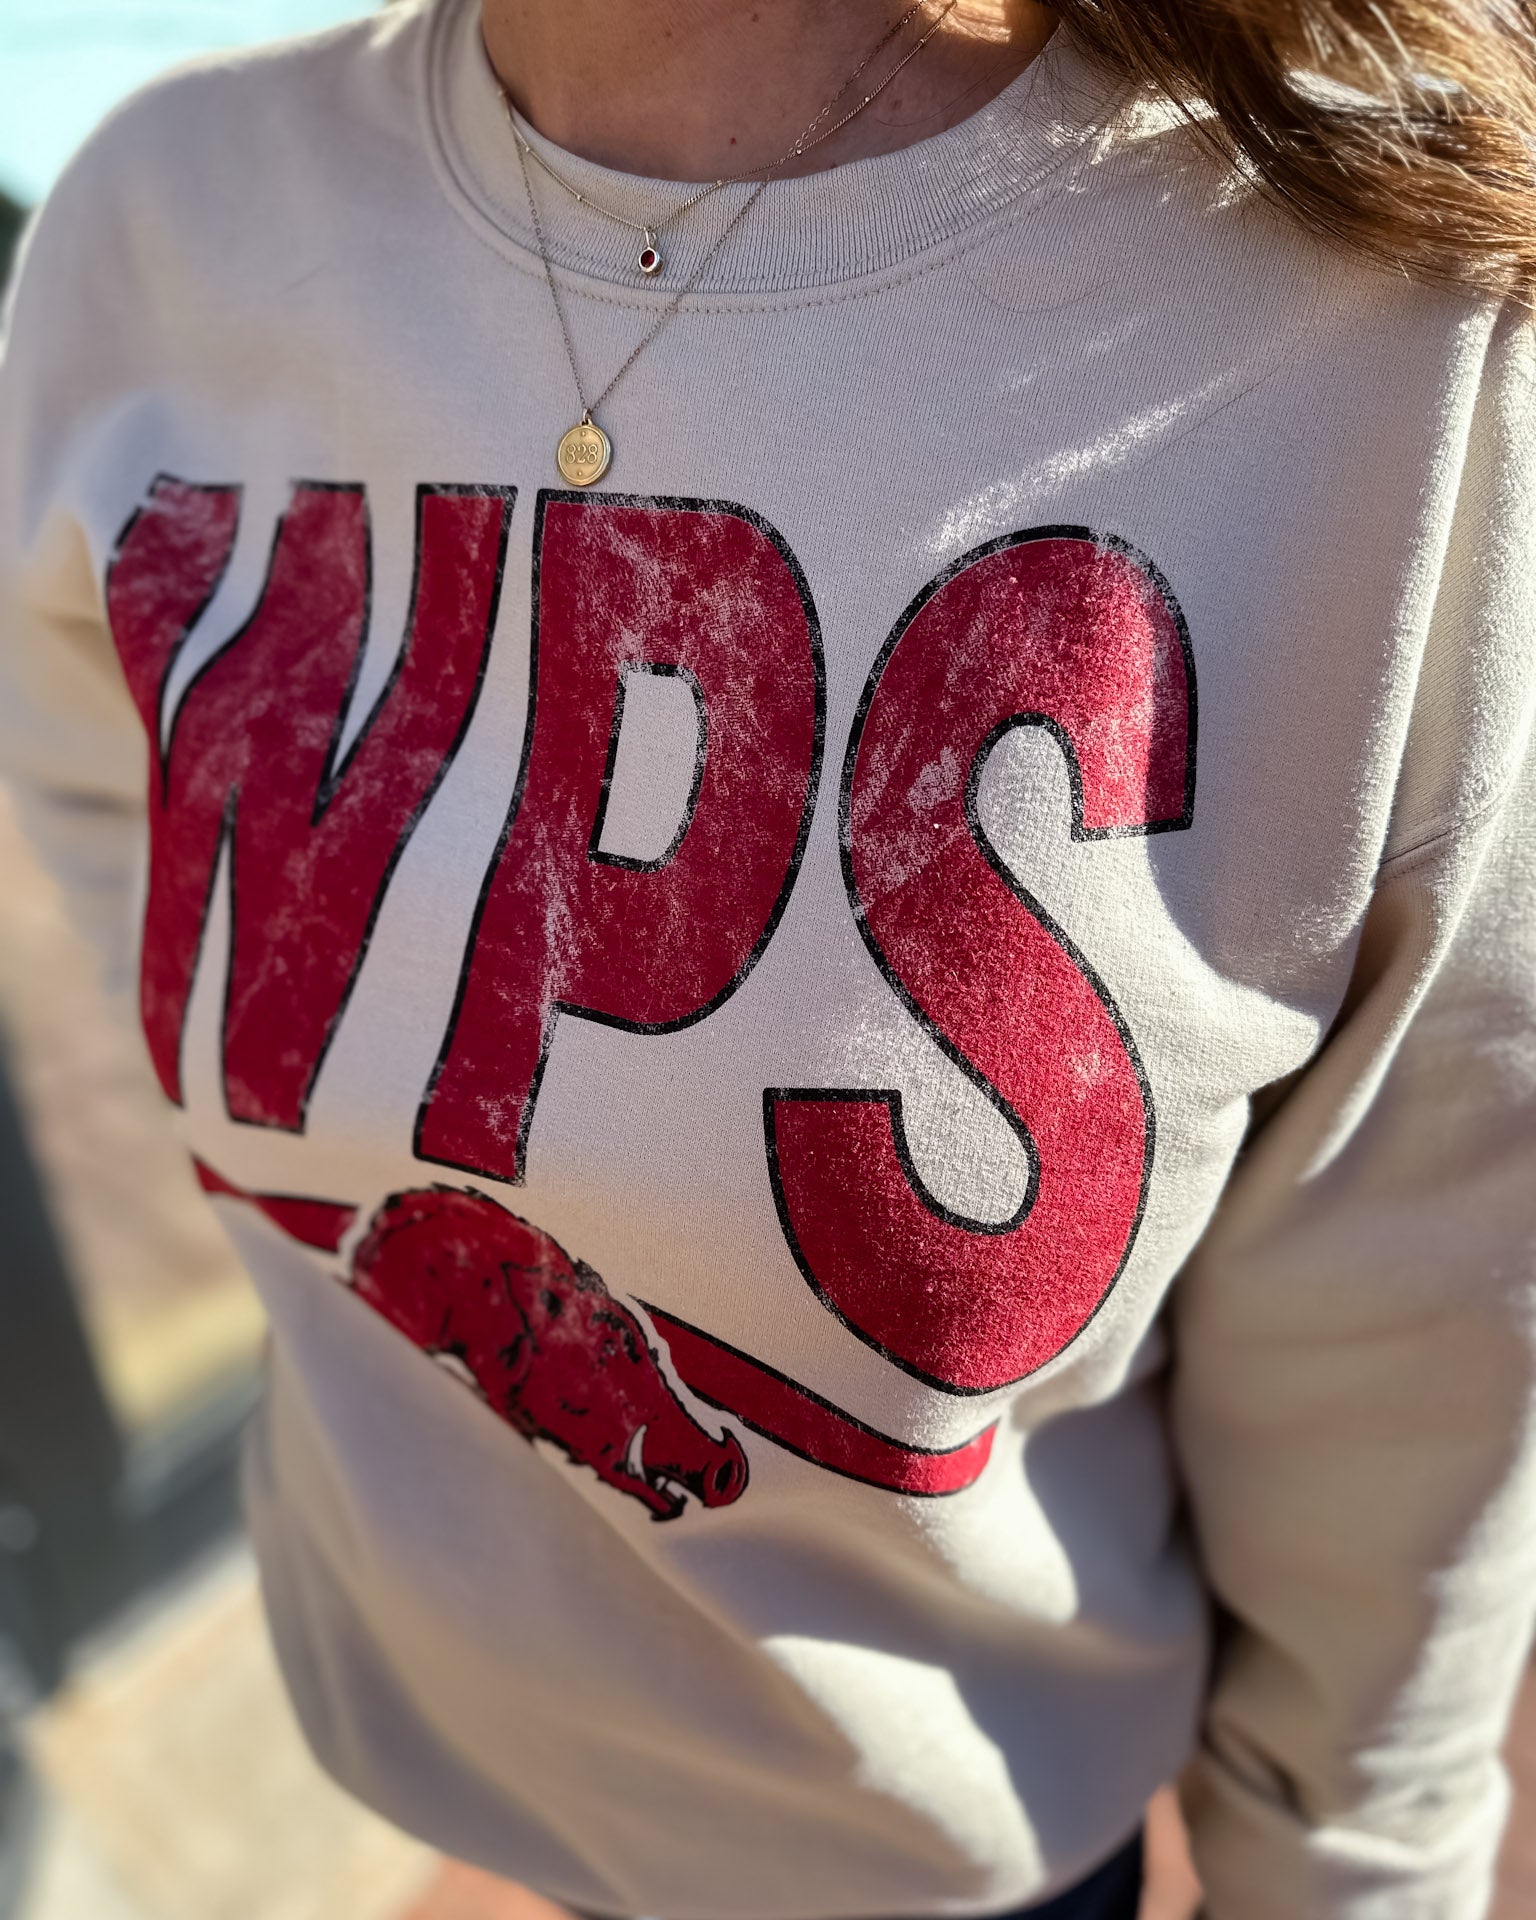 WPS Hog sweatshirt